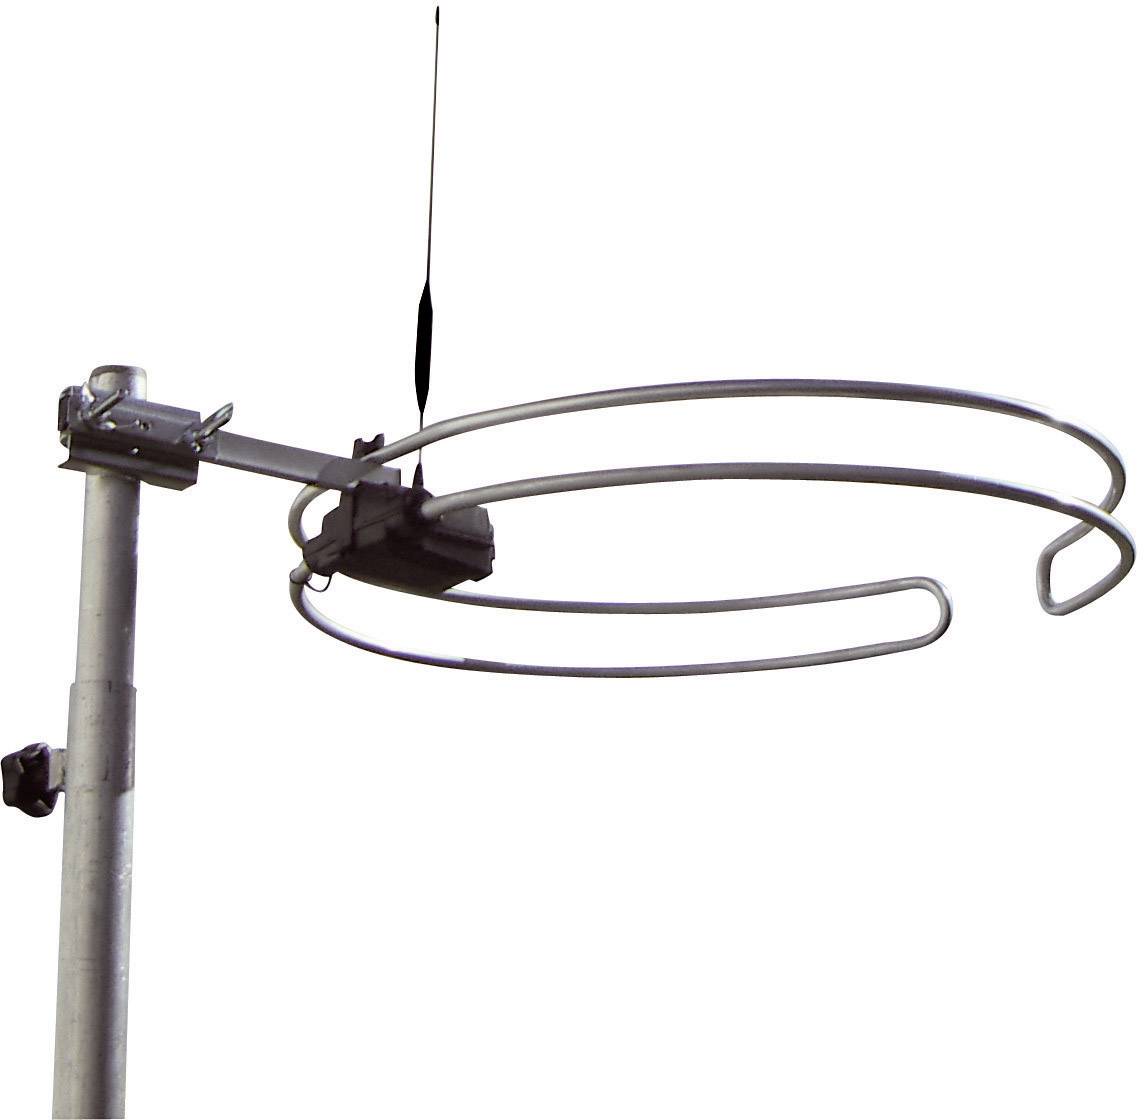 Wittenberg Antennen Multiband WB 2345-2 Passive DVB-T/T2